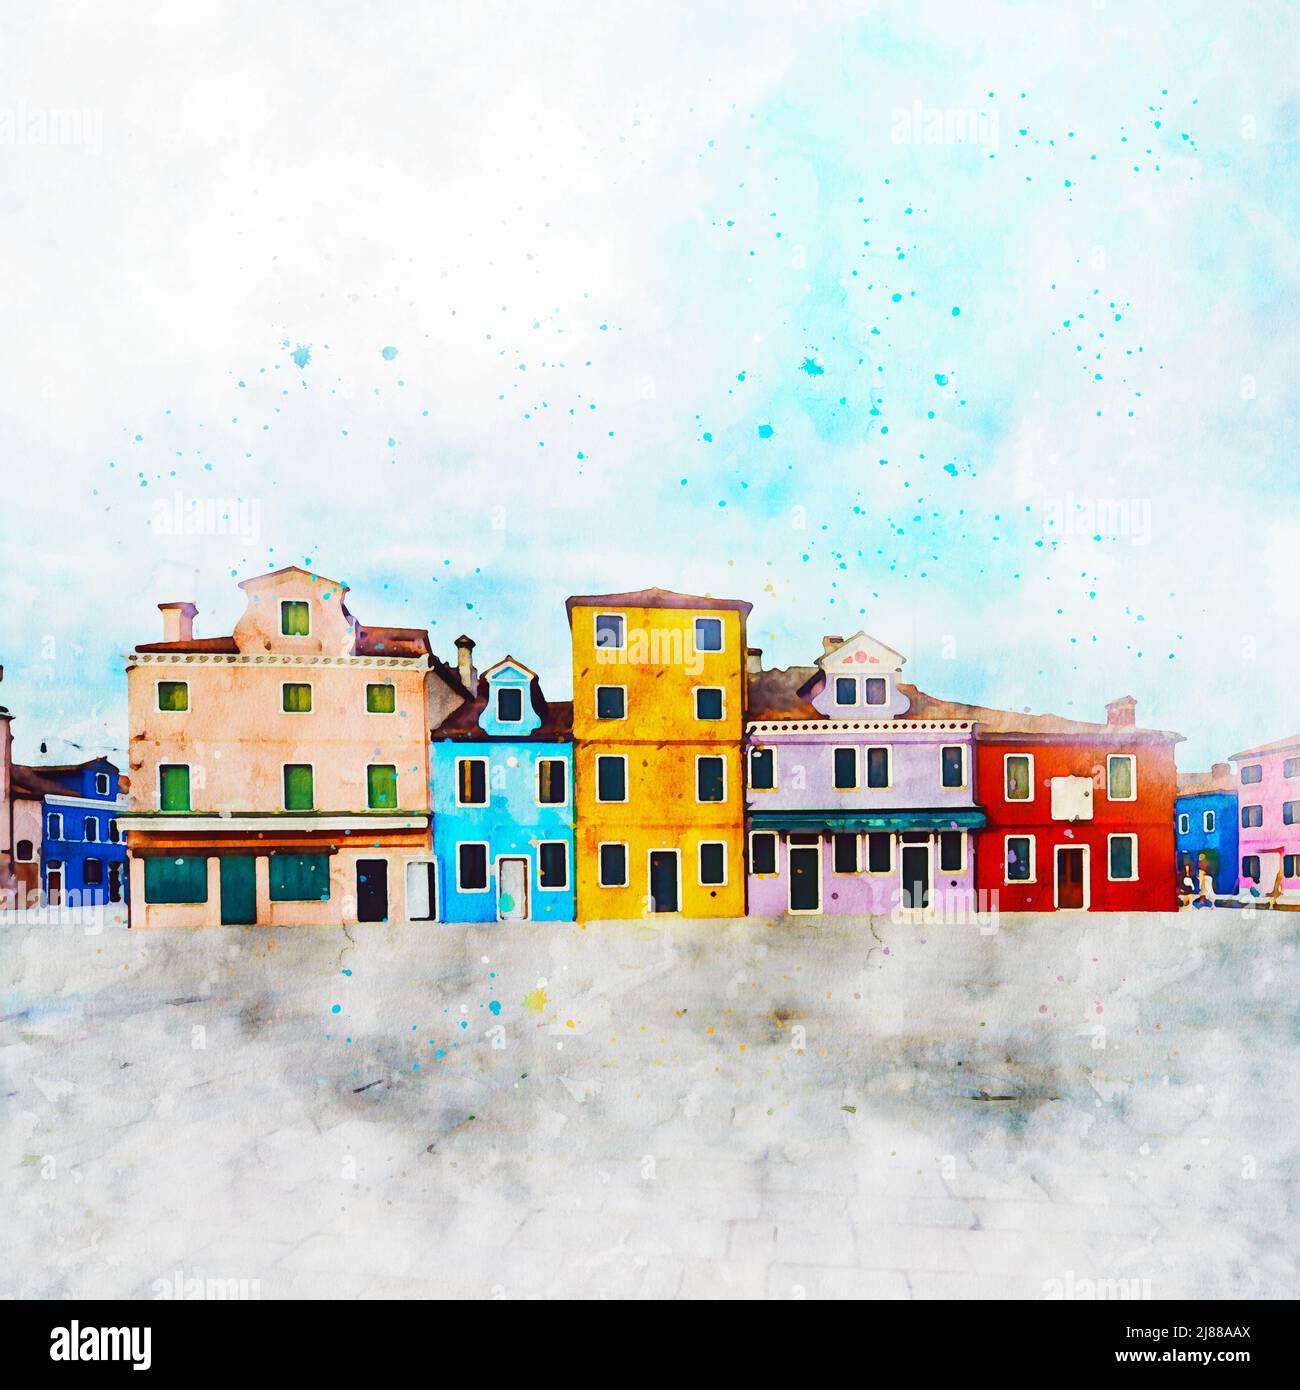 Burano, Venise, Italie, dessin à l'aquarelle. Maisons colorées et rues de l'île de Burano Venise. Carte postale touristique d'art de Burano, Italie Banque D'Images